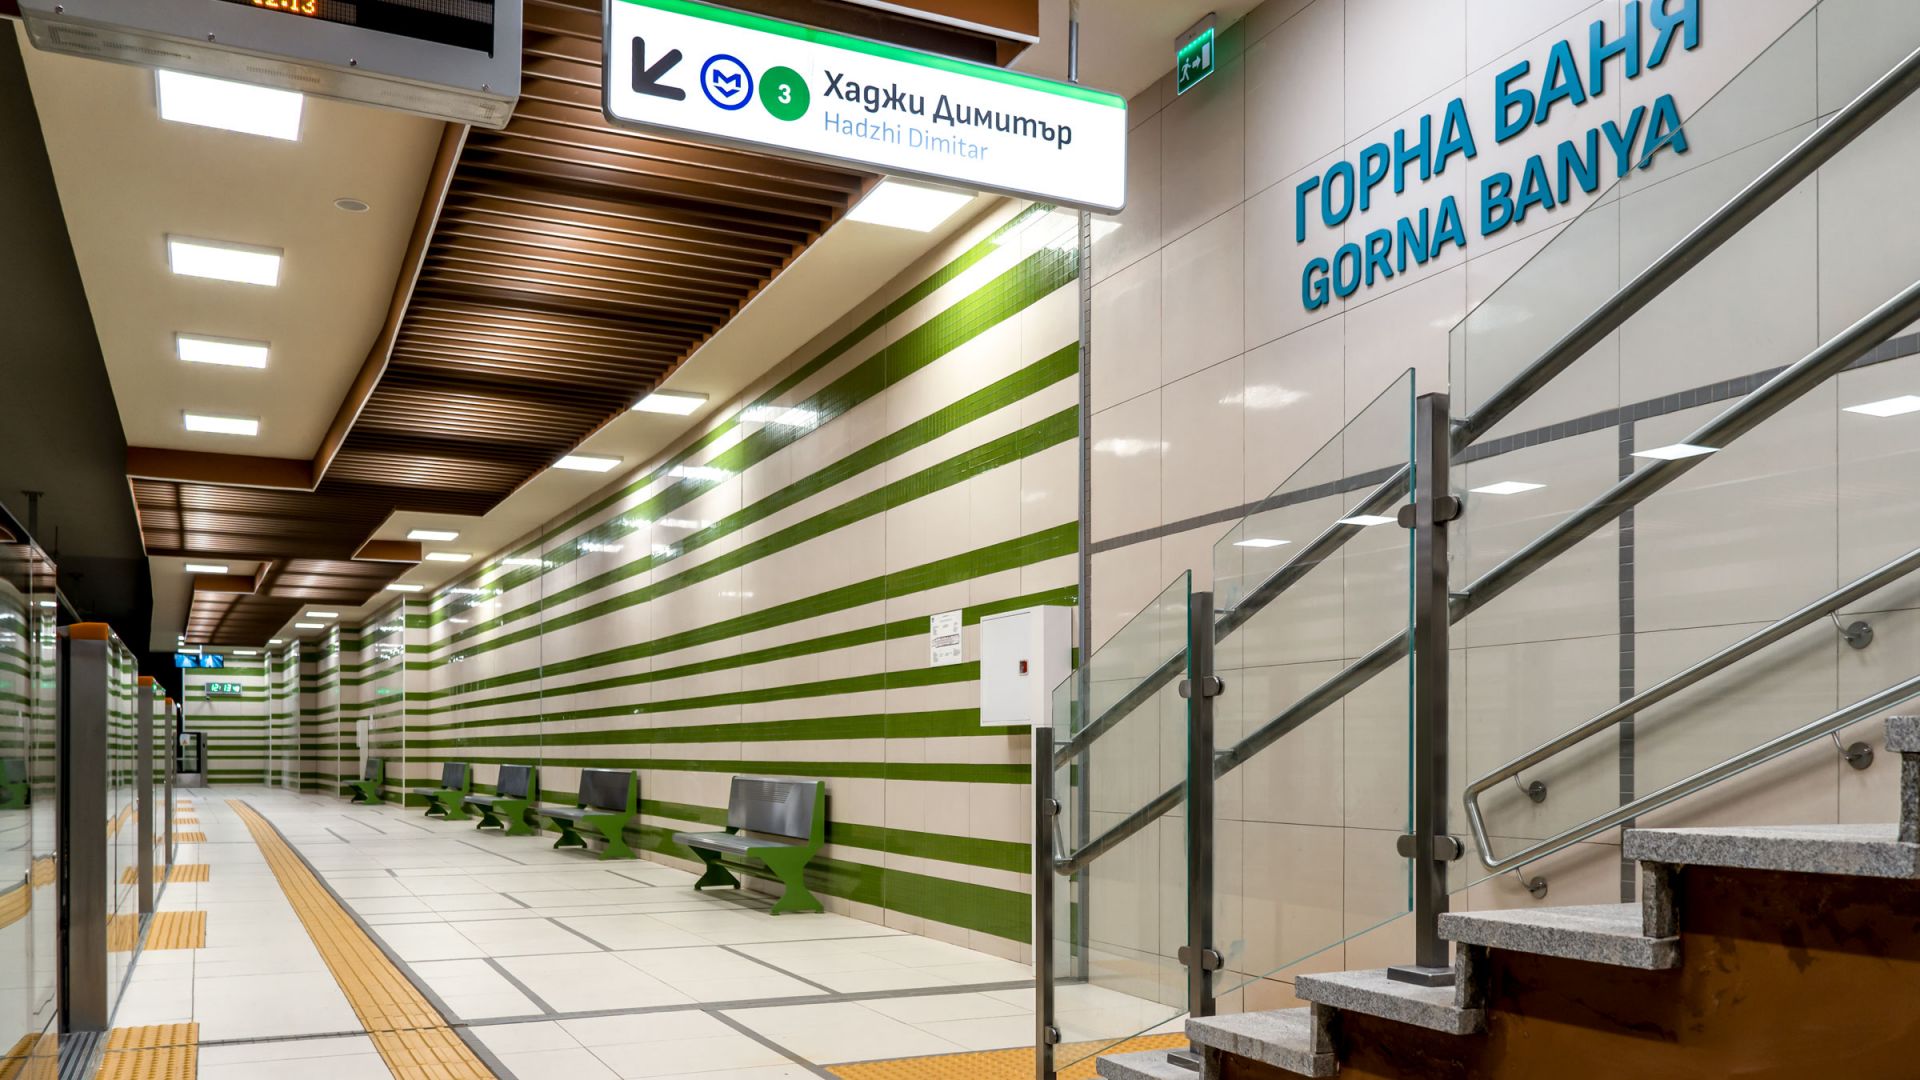 Над 46 000 пътници на ден ползват Линия 3 на софийското метро